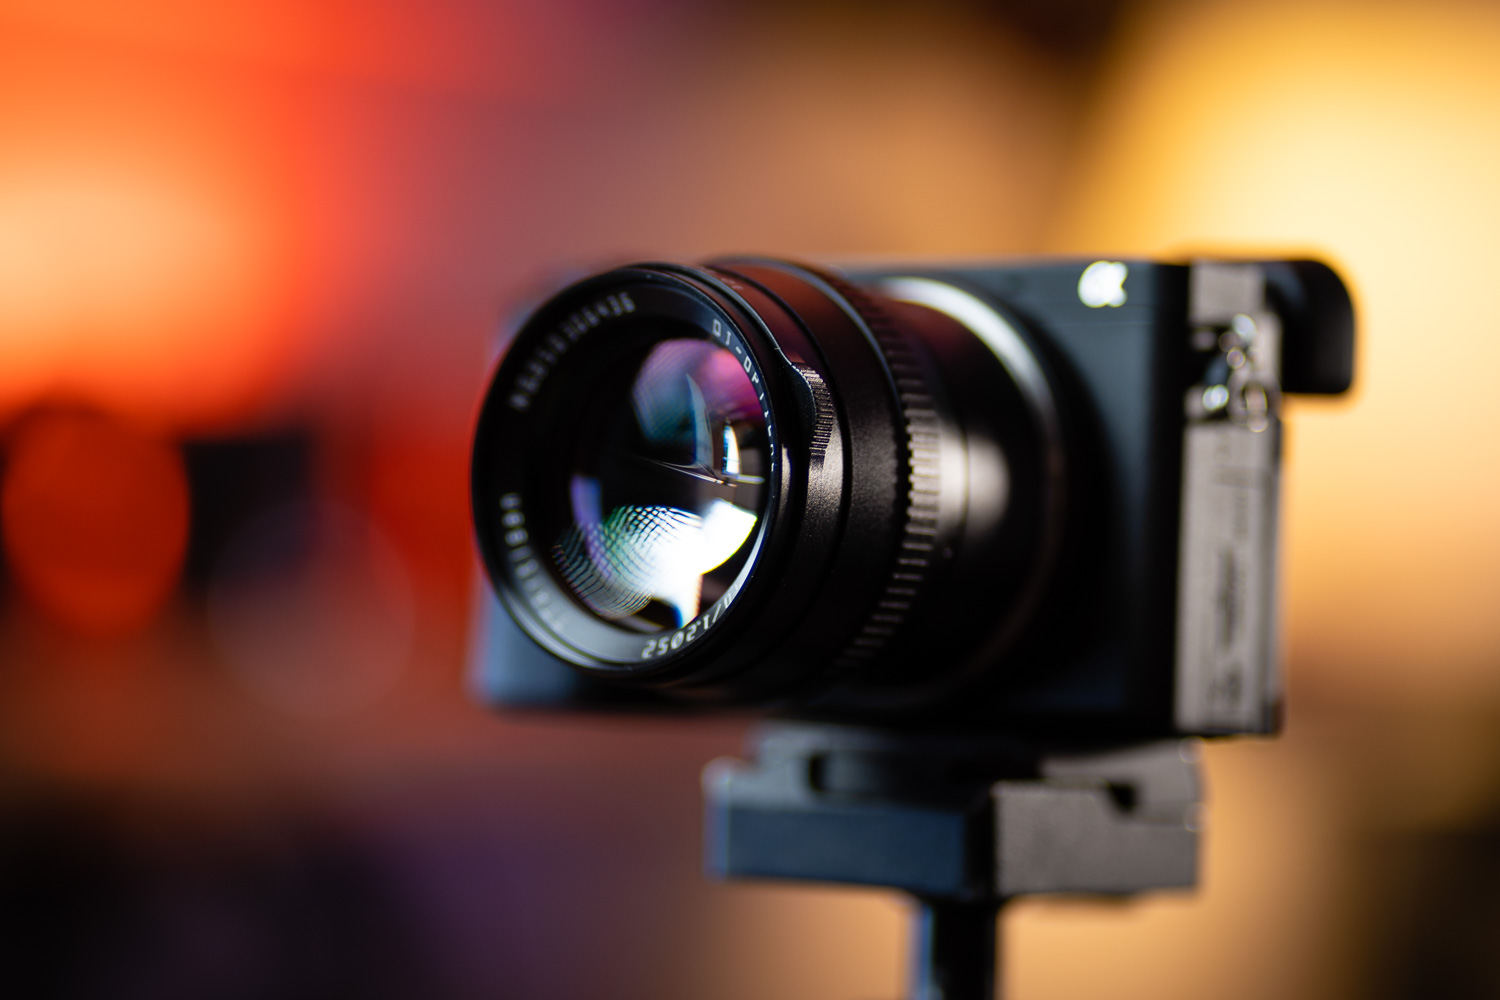 TTArtisan 50mm f/1.2 Lens Review